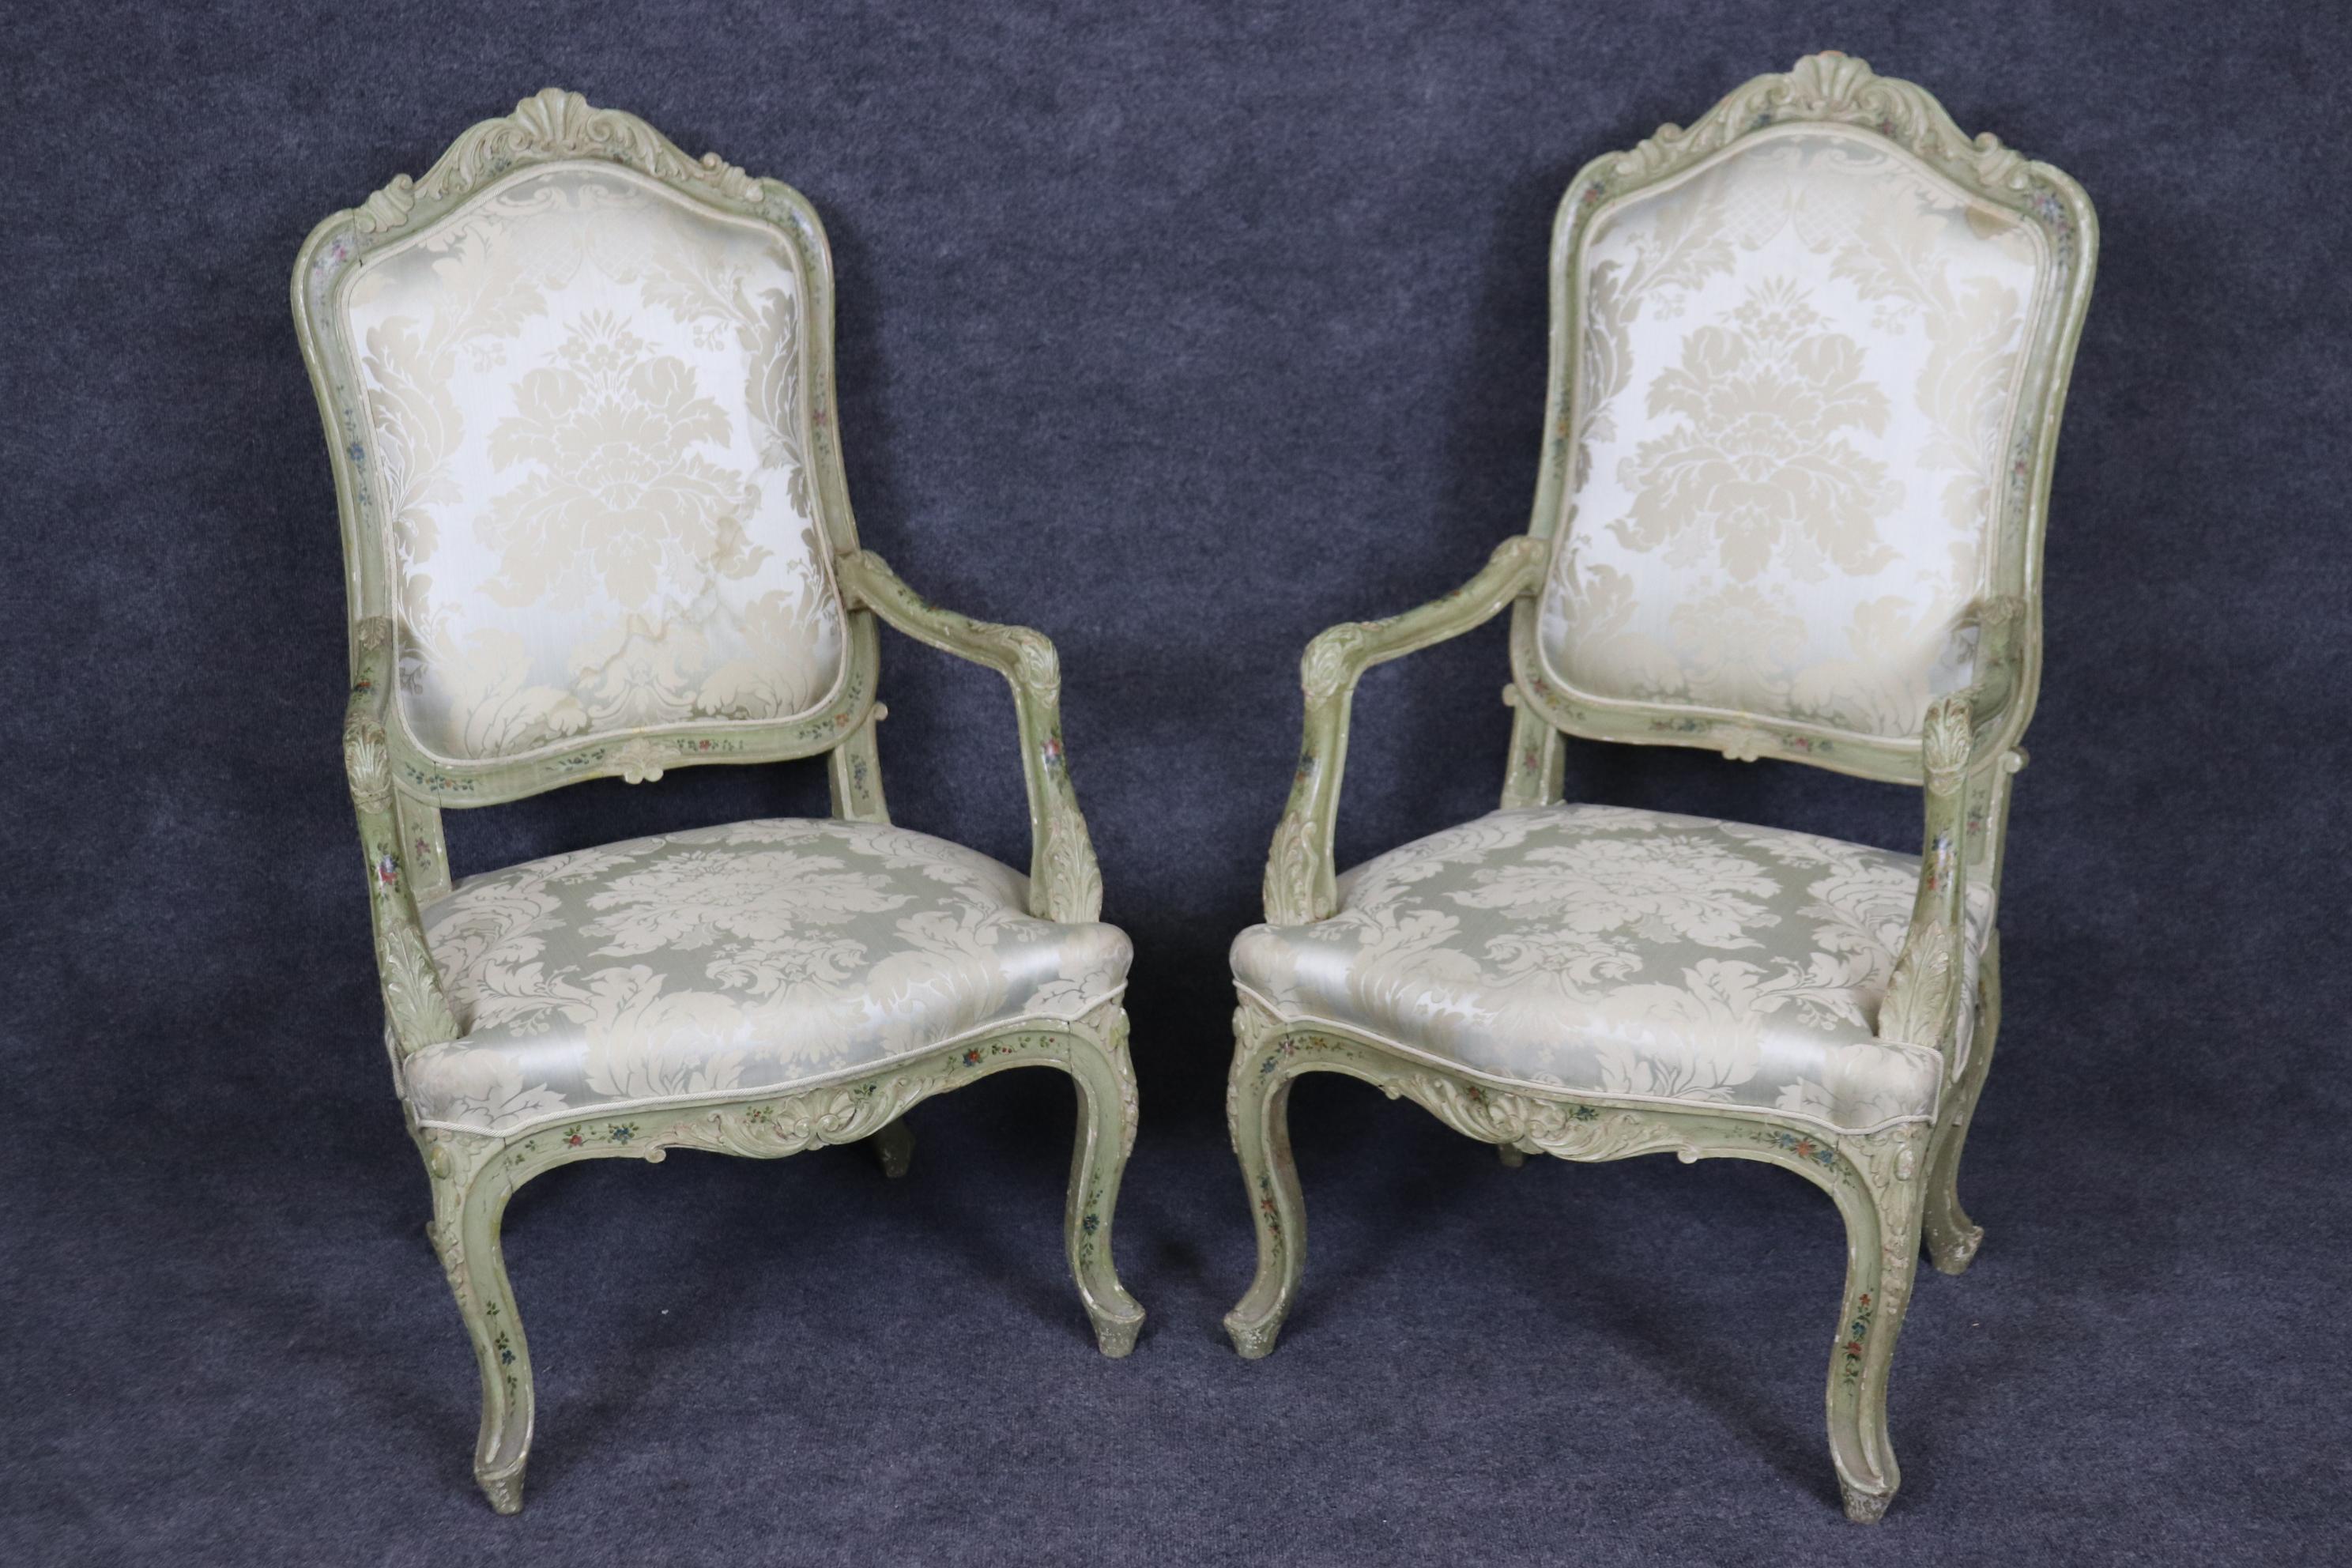 Dies ist ein wunderschöner Satz von 8 venezianischer Farbe dekoriert Französisch Louis XV Stil Stühle. Die Stühle wurden in Italien nach französischem Geschmack hergestellt. Die Stühle haben Schäden an der ursprünglichen Polsterung und müssen neu